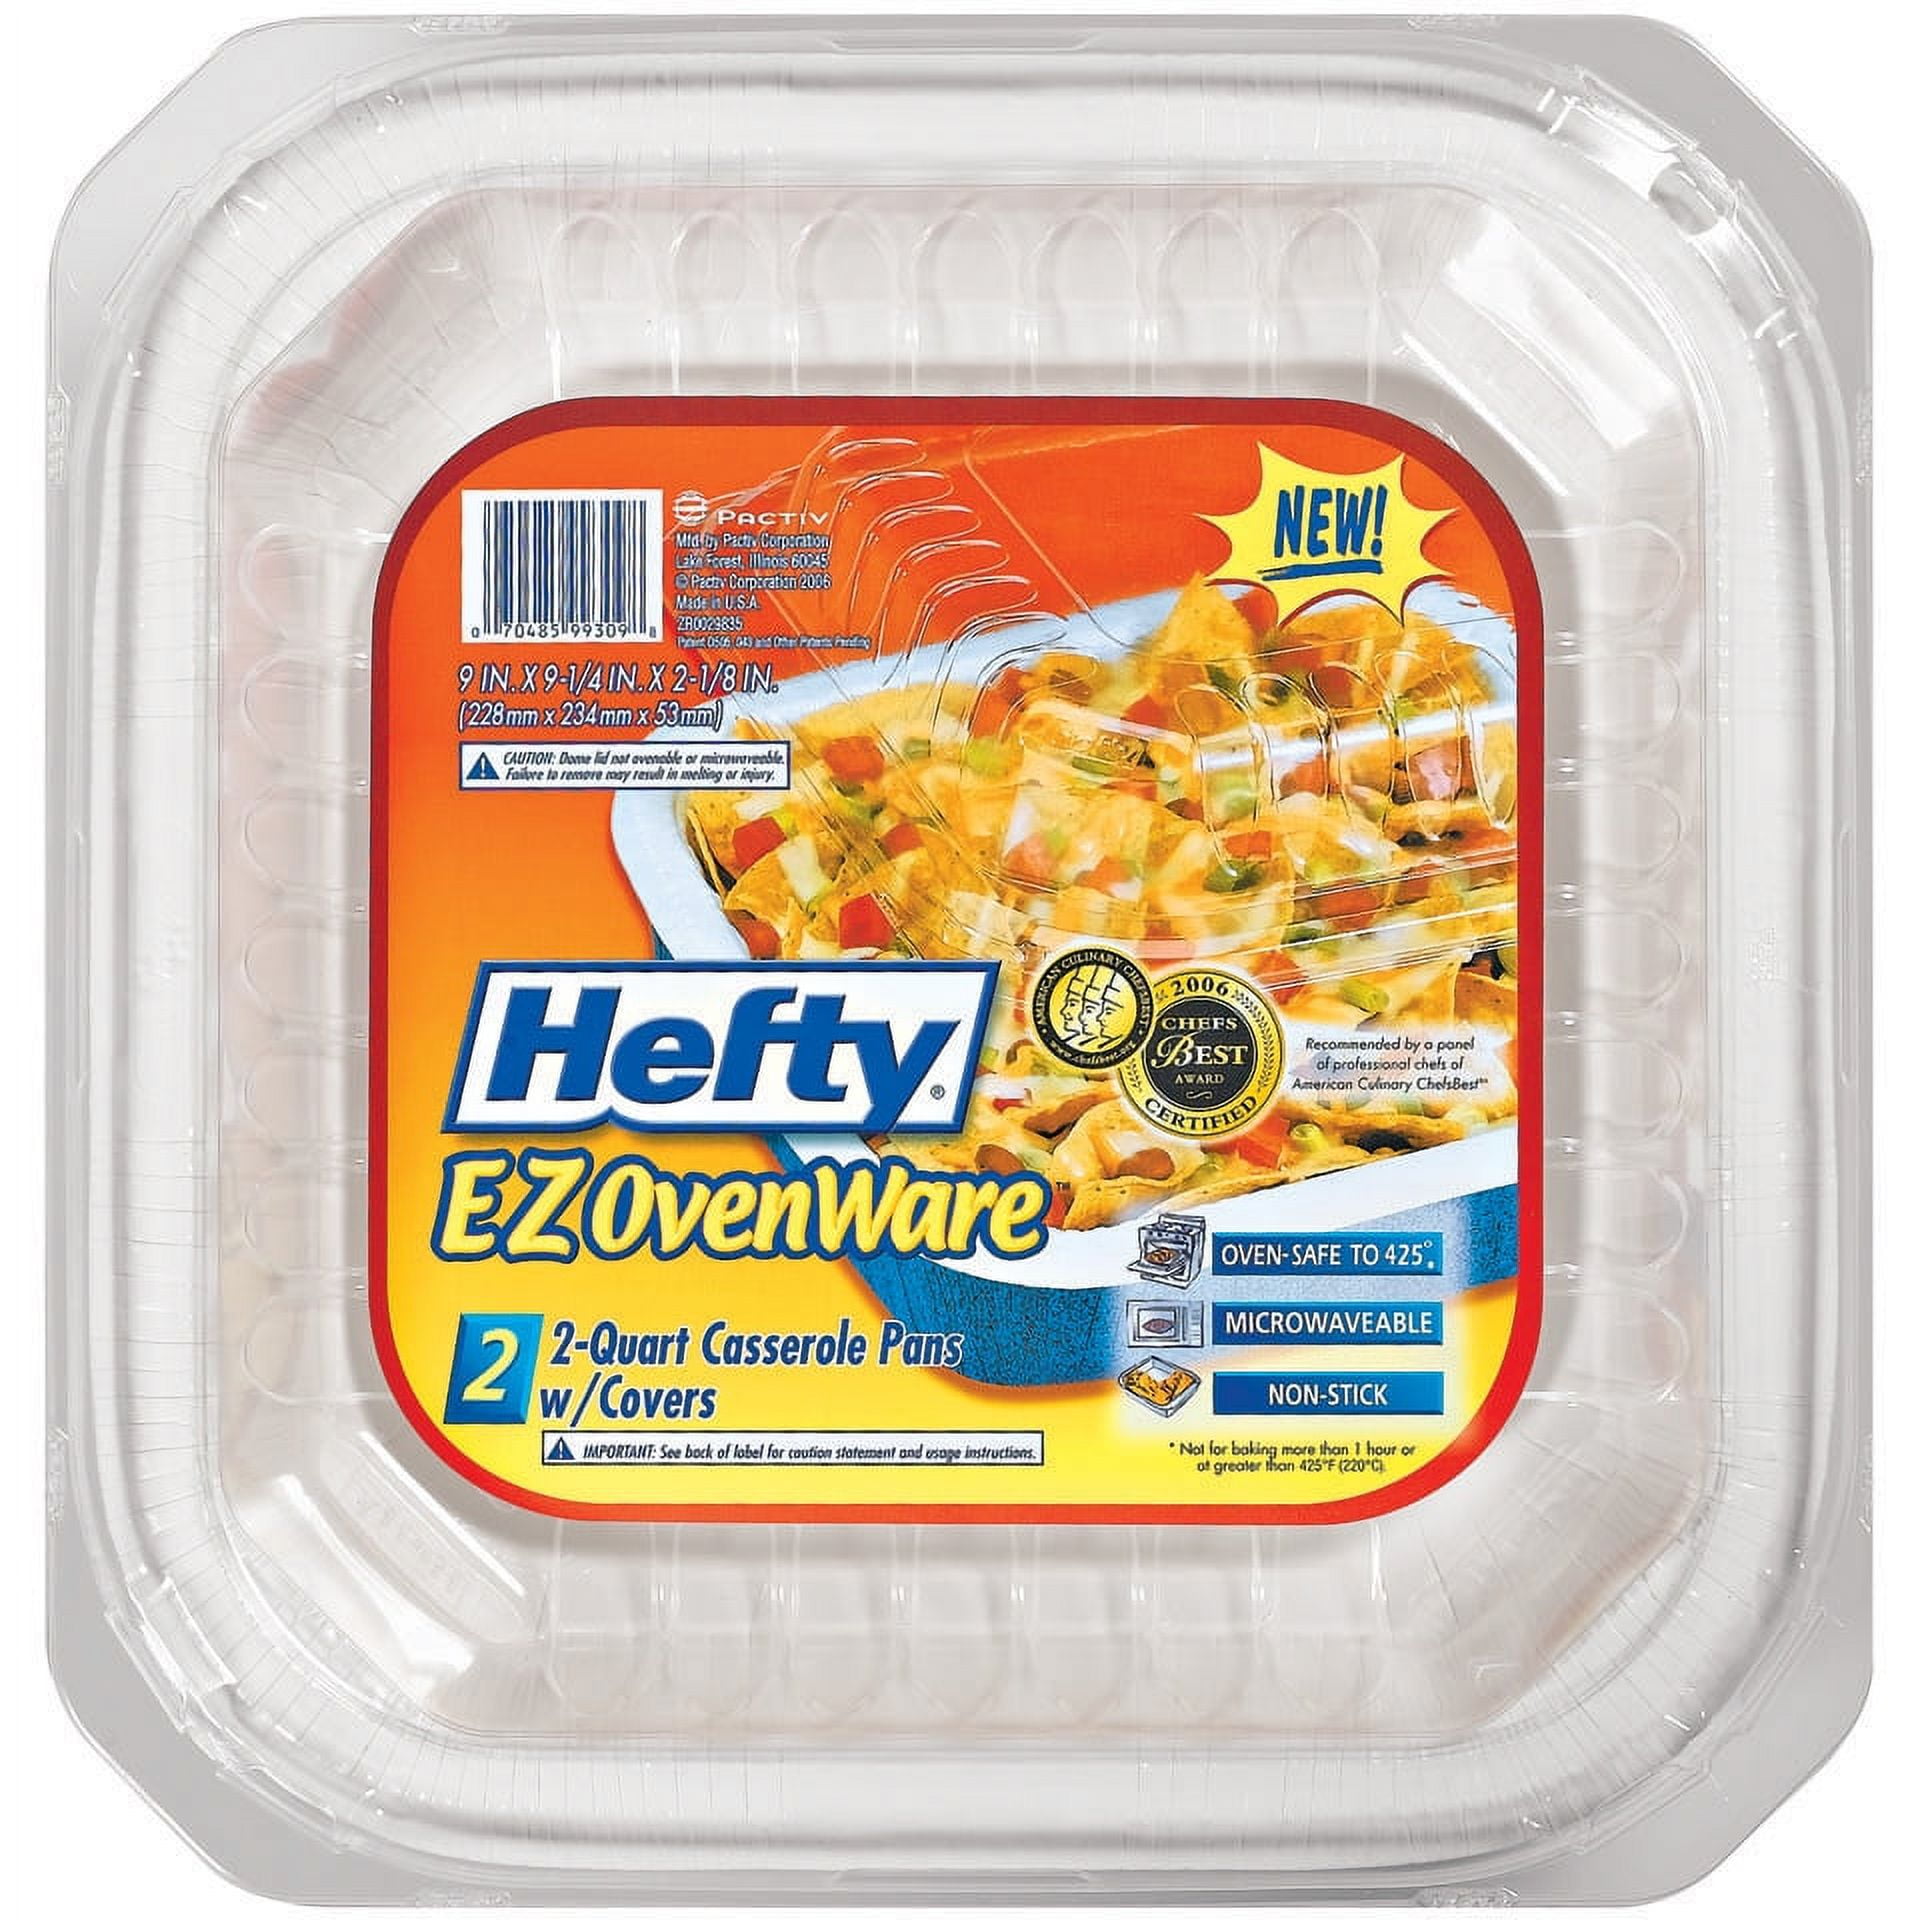 EZ Foil Casserole & Lasagna Baking Pan (2-Pack) - Foley Hardware